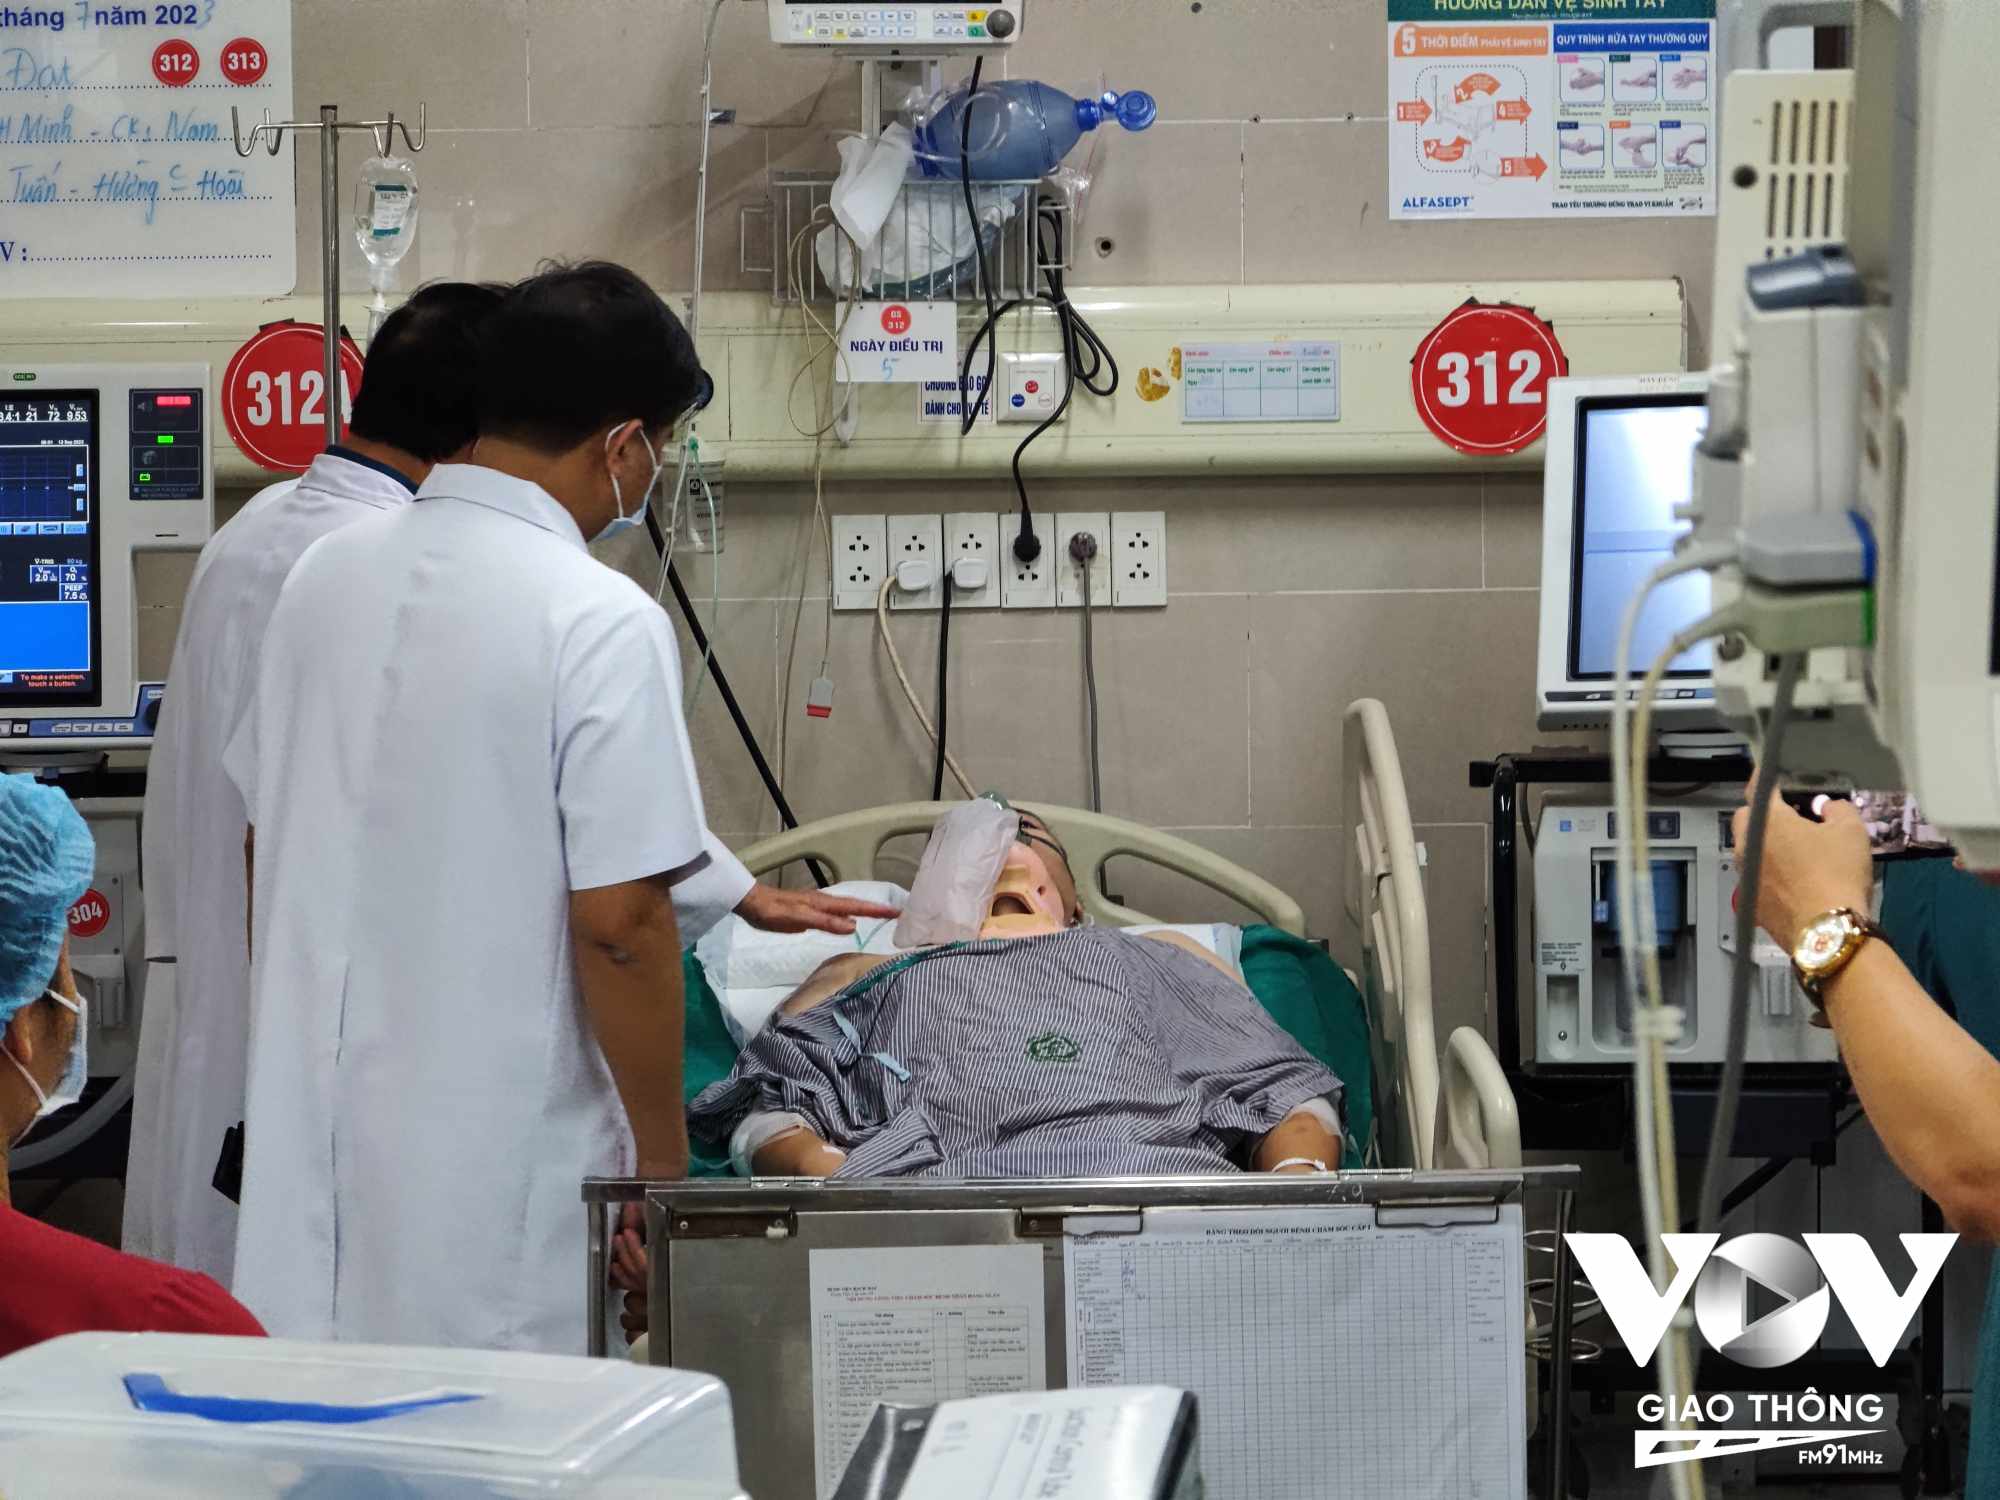 Bệnh nhân vụ cháy đang được điều trị tại bệnh viện Bạch Mai. Ảnh: Chu Đức